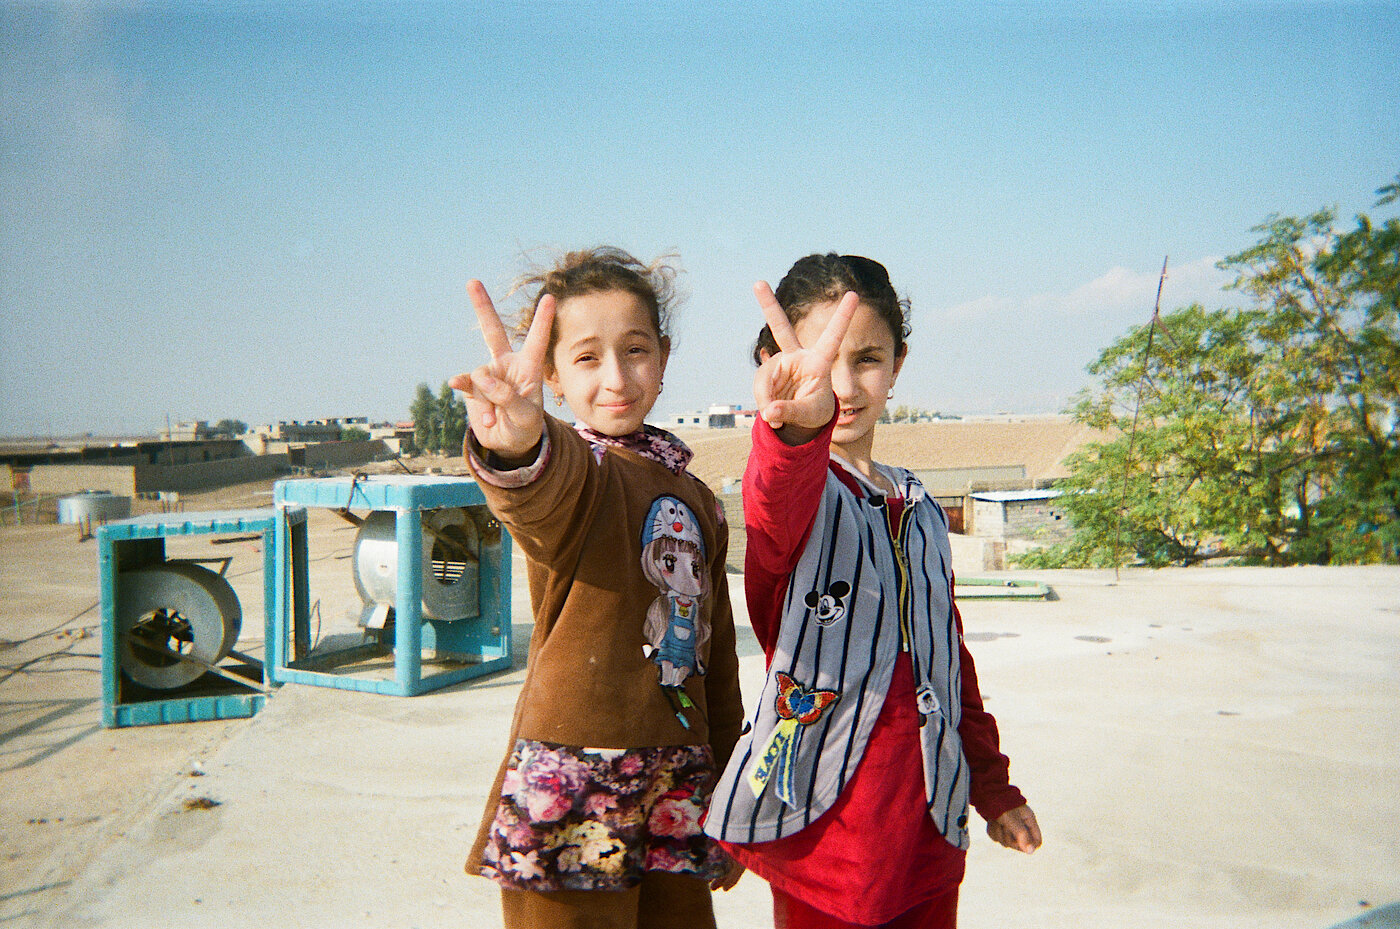 Foto: Zwei Mädchen machen mit ihren Händen das Peace- oder Victory-Zeichen.